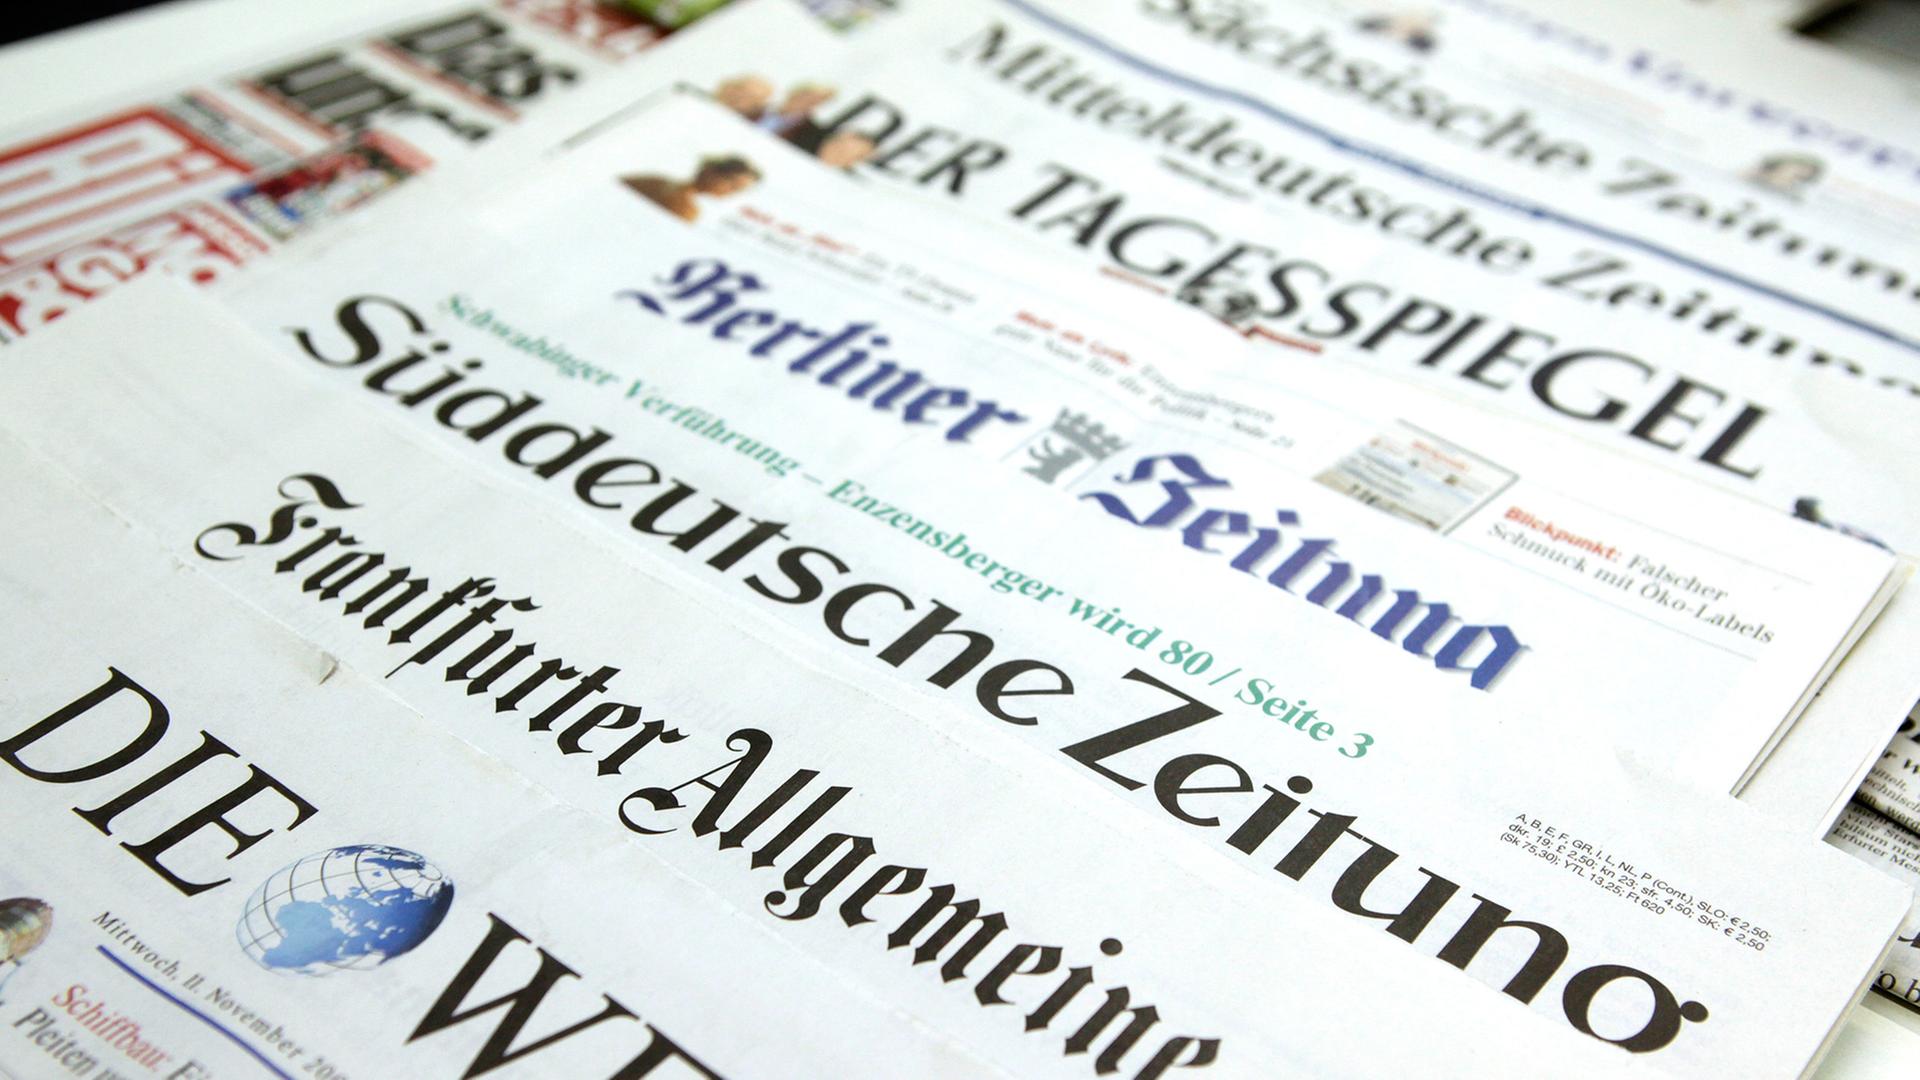 Auf einem Tisch liegen deutsche Tageszeitungen so versetzt, dass jeweils nur der Titel zu lesen ist, ganz vorne "Die Welt", "Frankfurter Allgemeine Zeitung" und "Süddeutsche Zeitung"